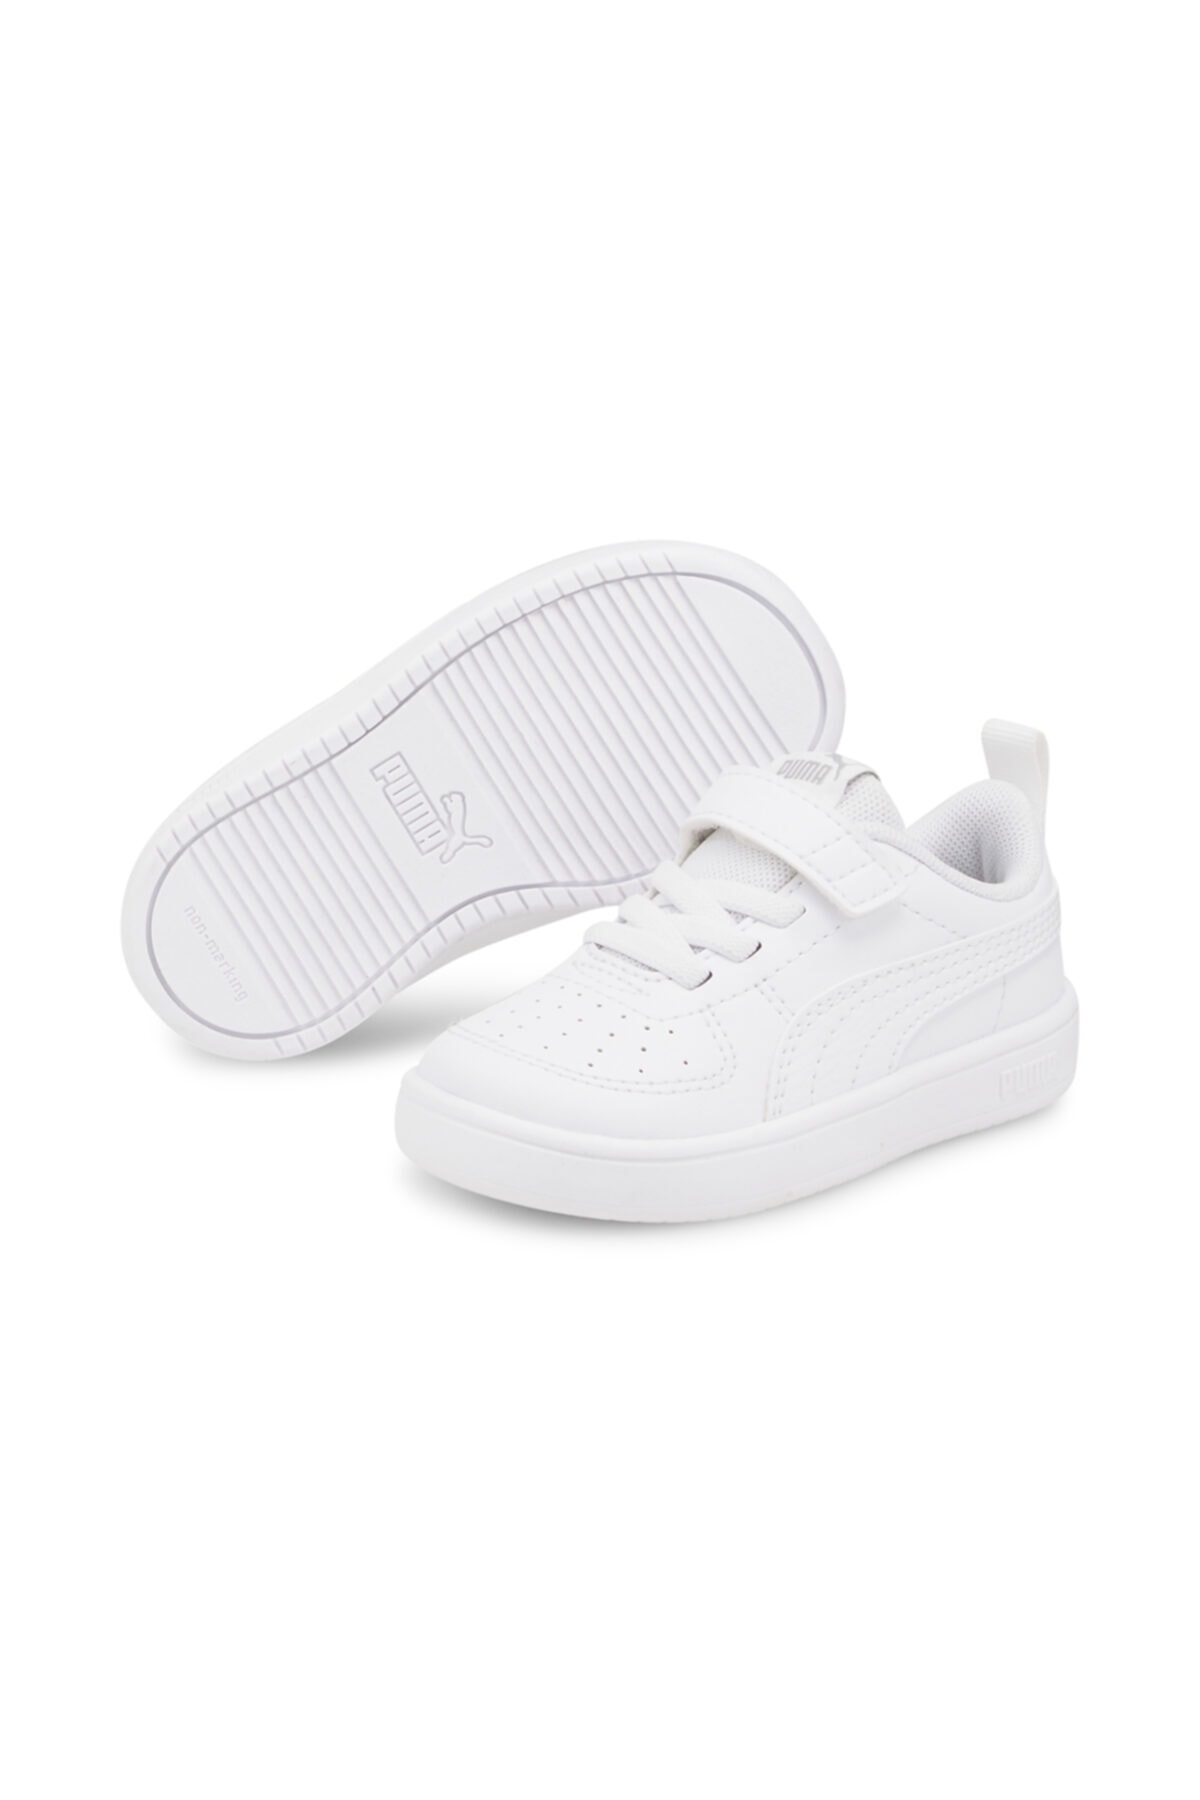 Puma Rickie Ac Inf - Unisex Beyaz Bebek Spor Ayakkabı